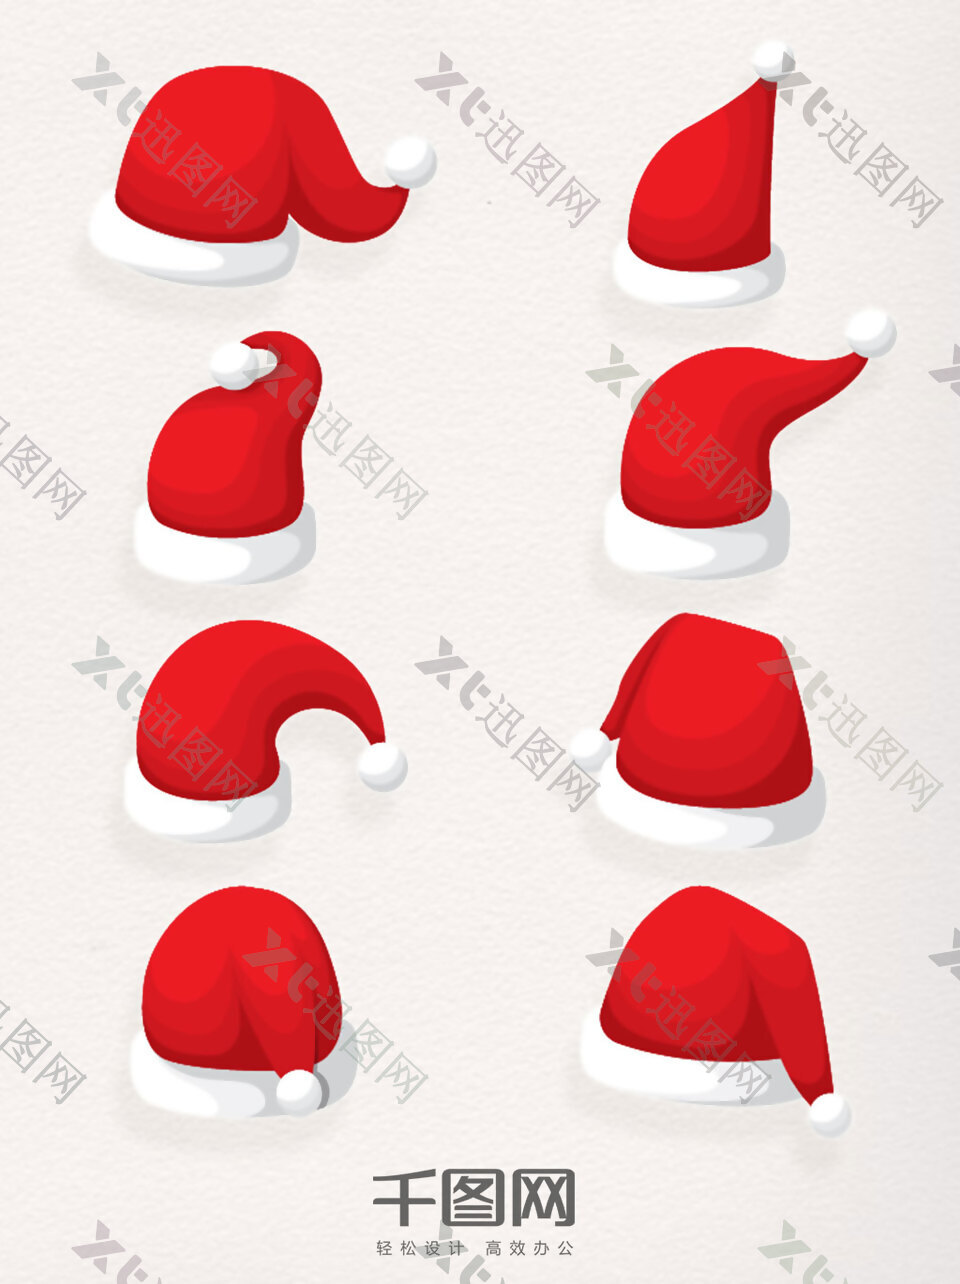 一组圣诞节超萌Q版圣诞帽设计元素